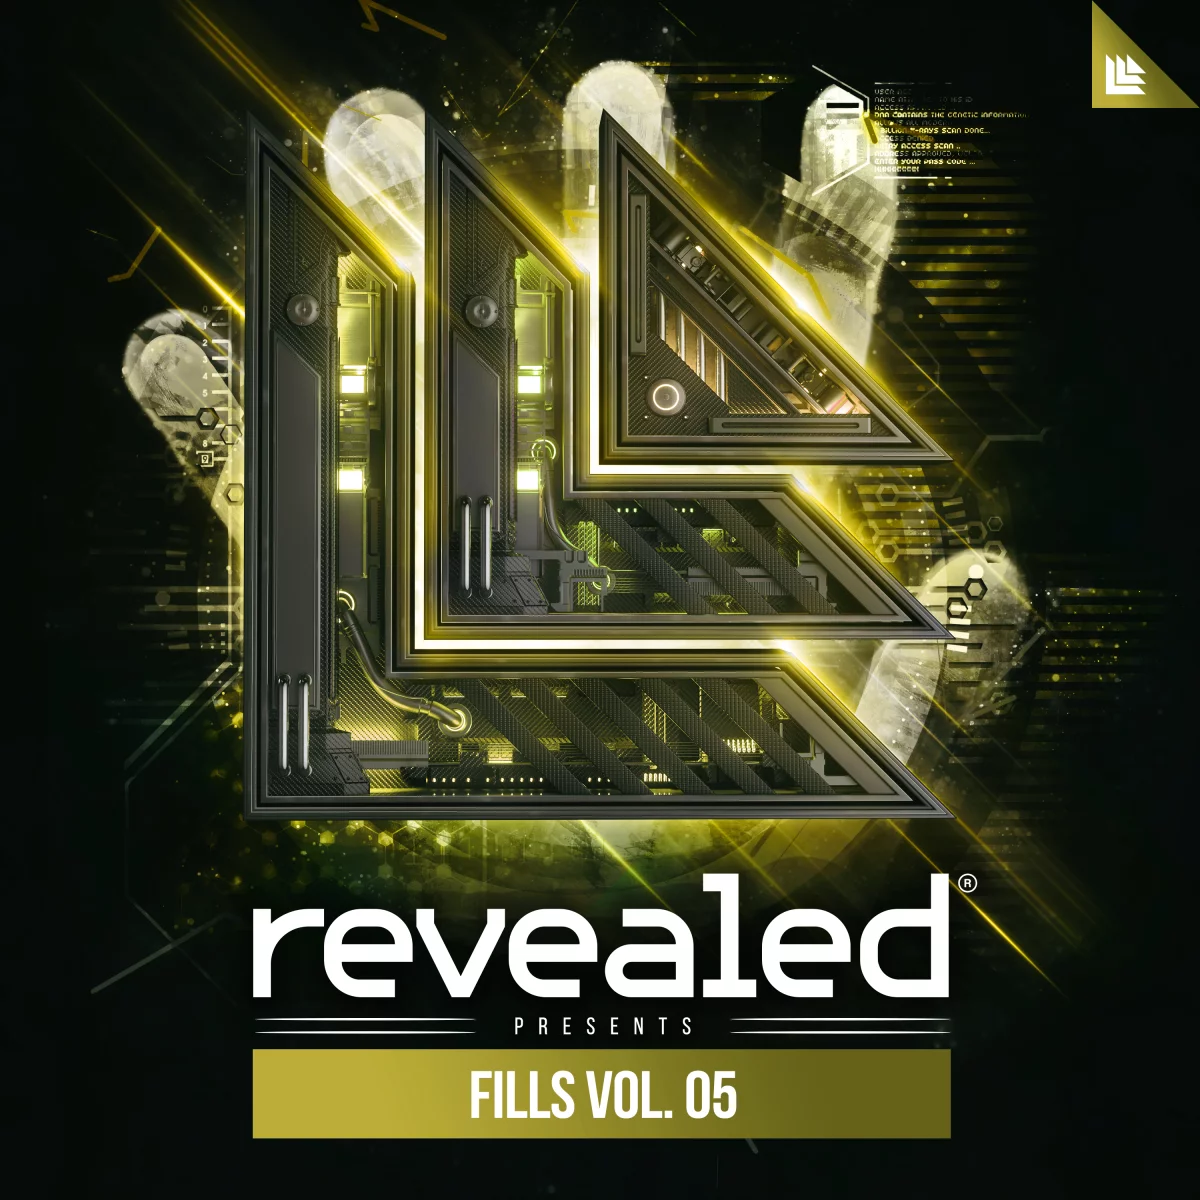 Revealed Fills Vol. 5 - revealedrec⁠ 